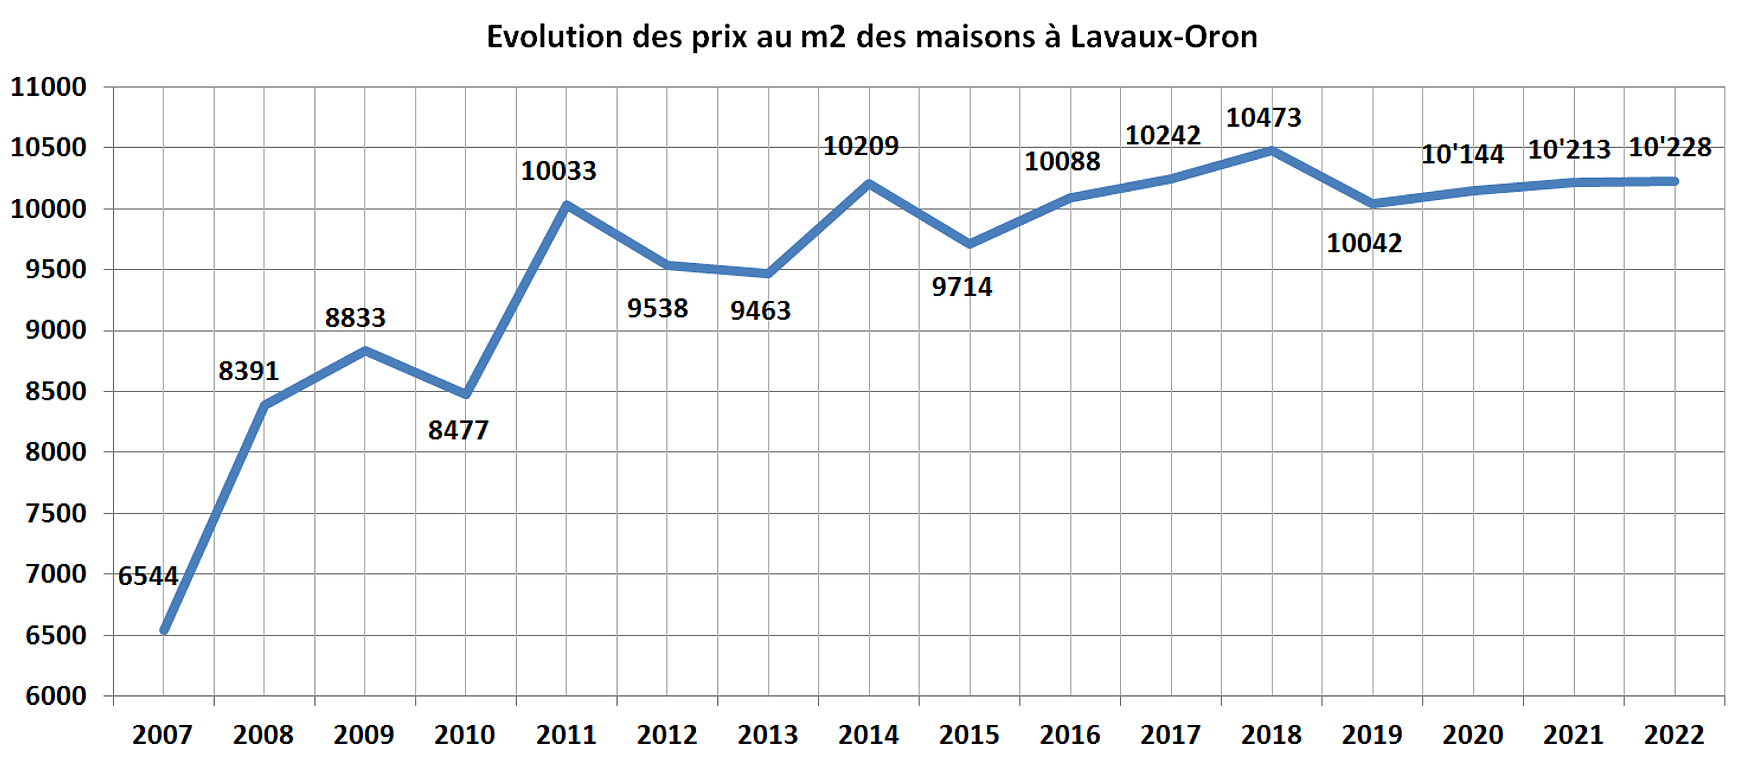 evolution prix m2 maison lavaux oron 2022